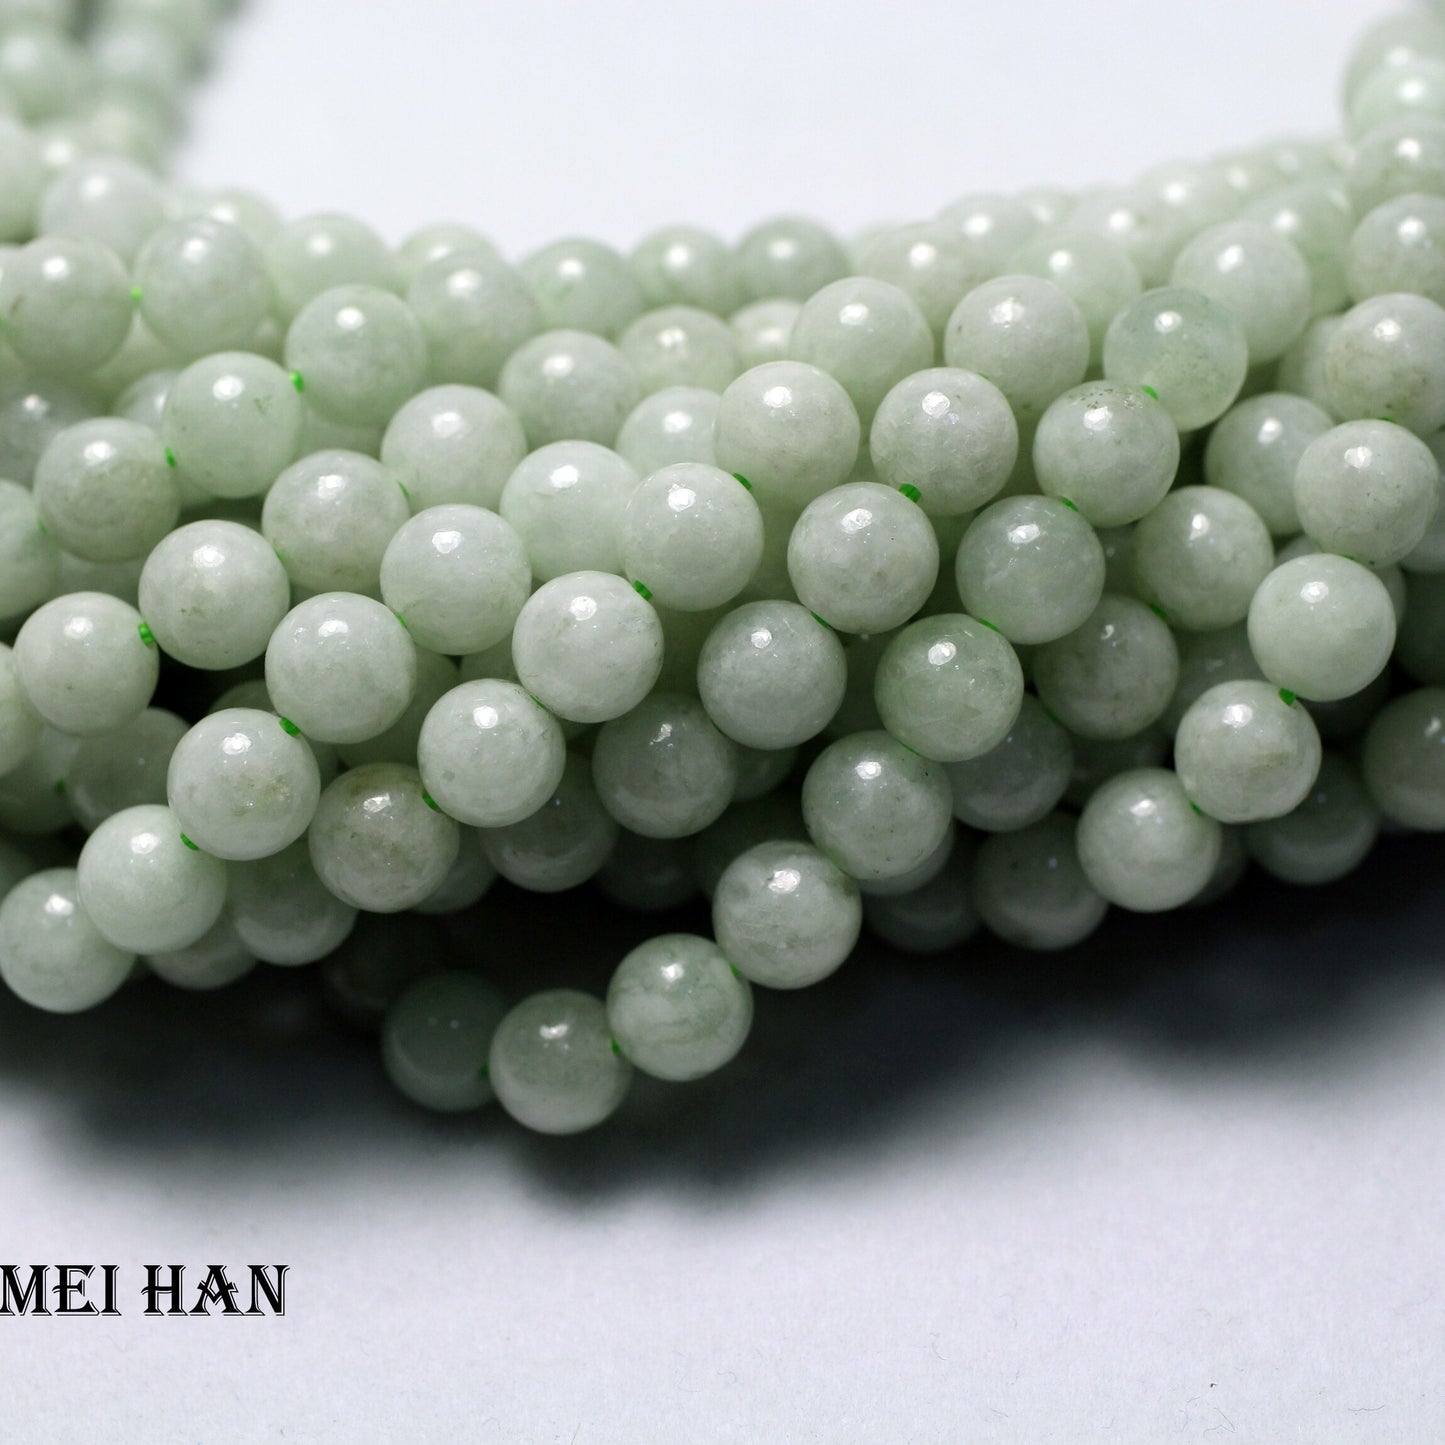 Burma Jade smooth round stones beads